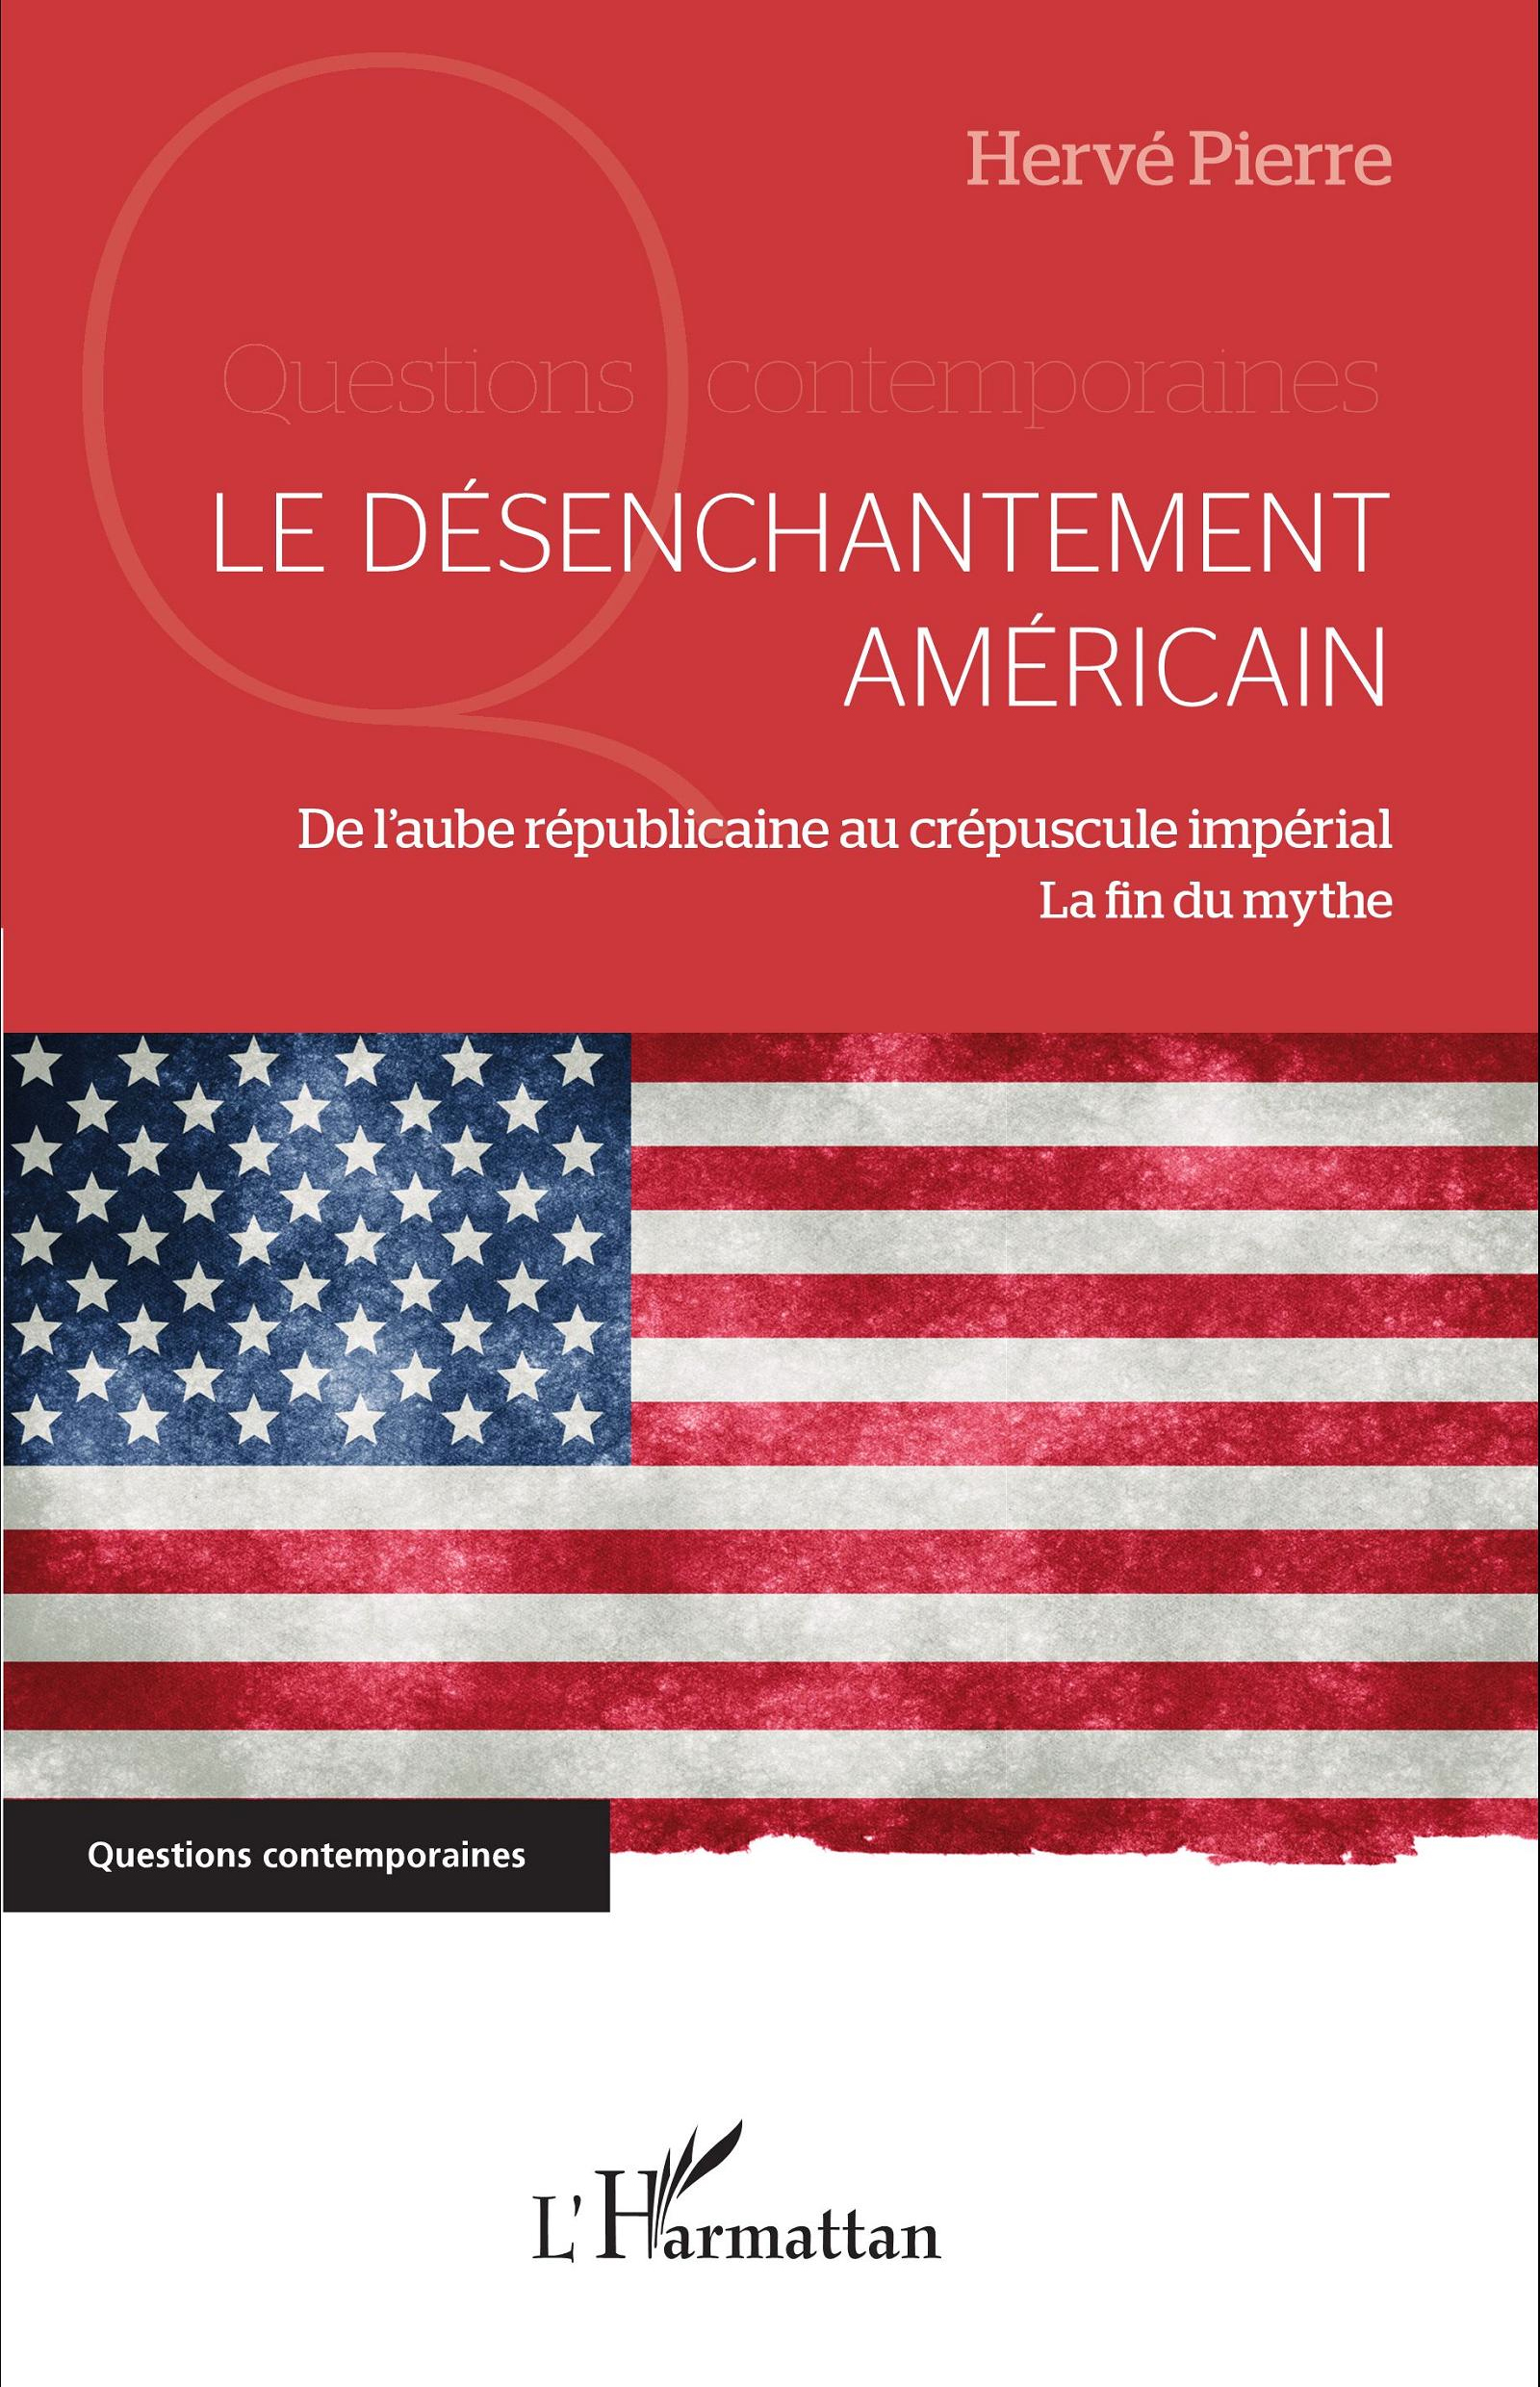 Le désenchantement américain, un livre de Hervé Pierre